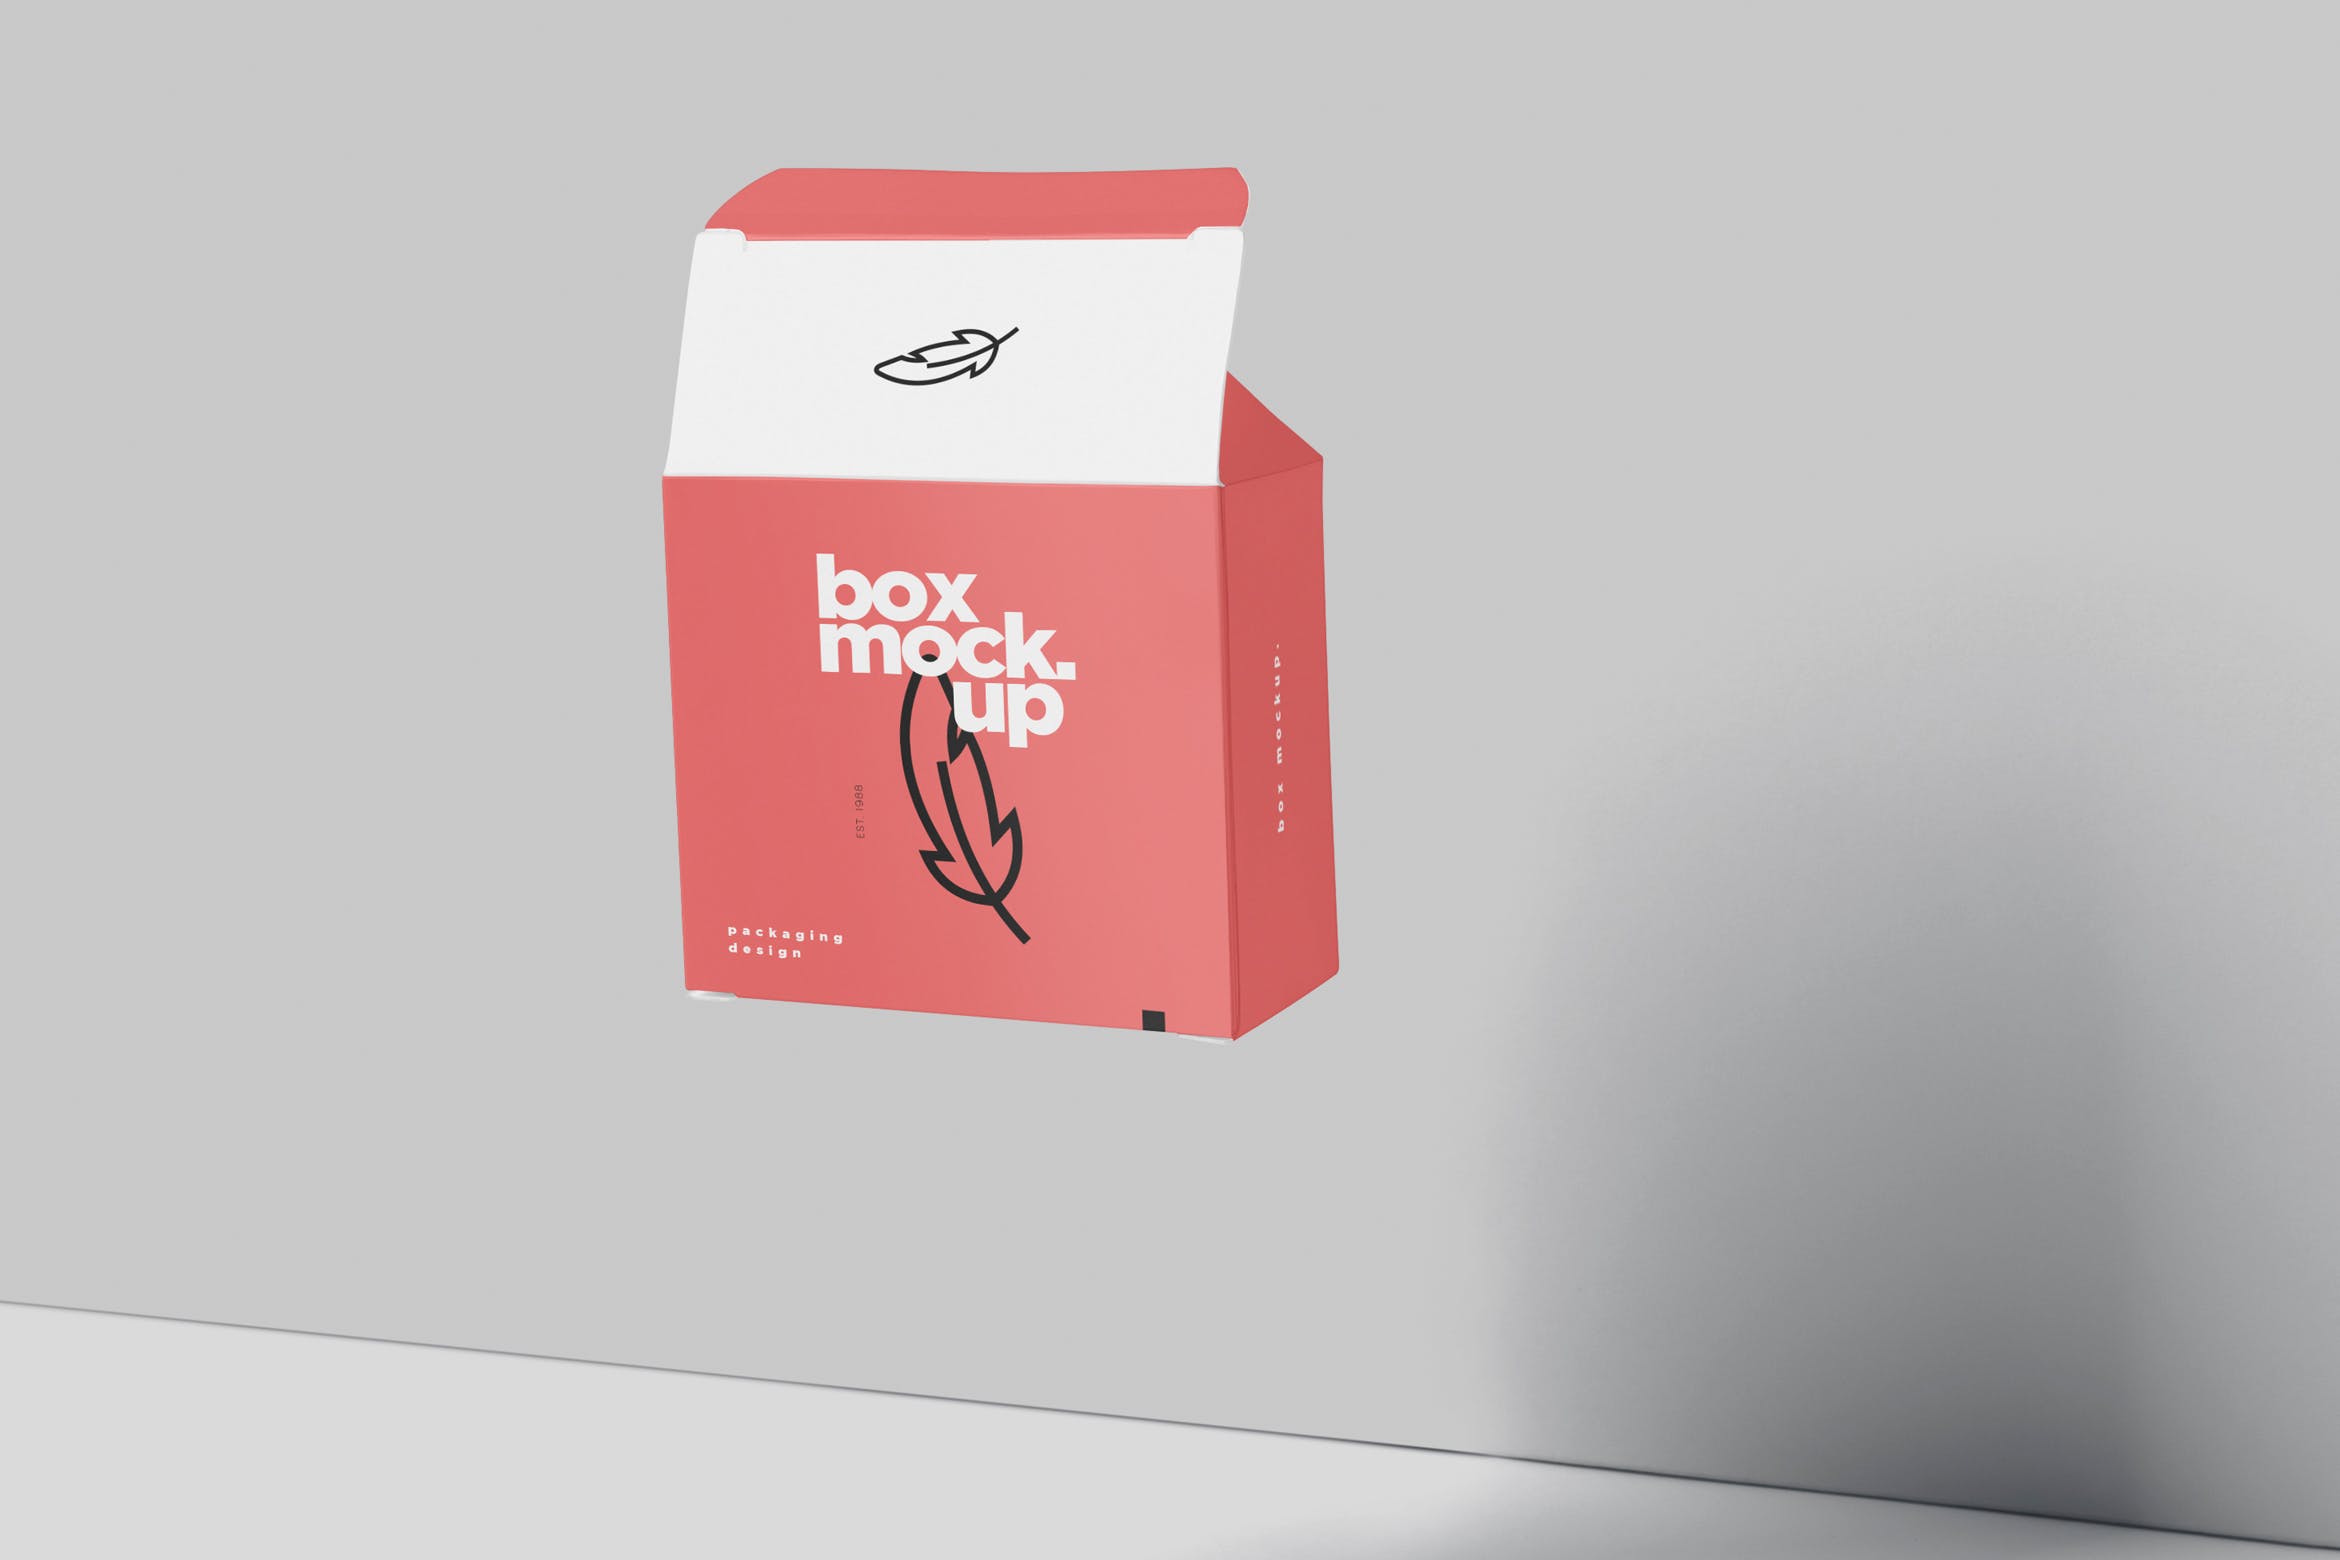 扁平方形包装盒外观设计效果图素材库精选 Box Mockup – Square Slim Size插图